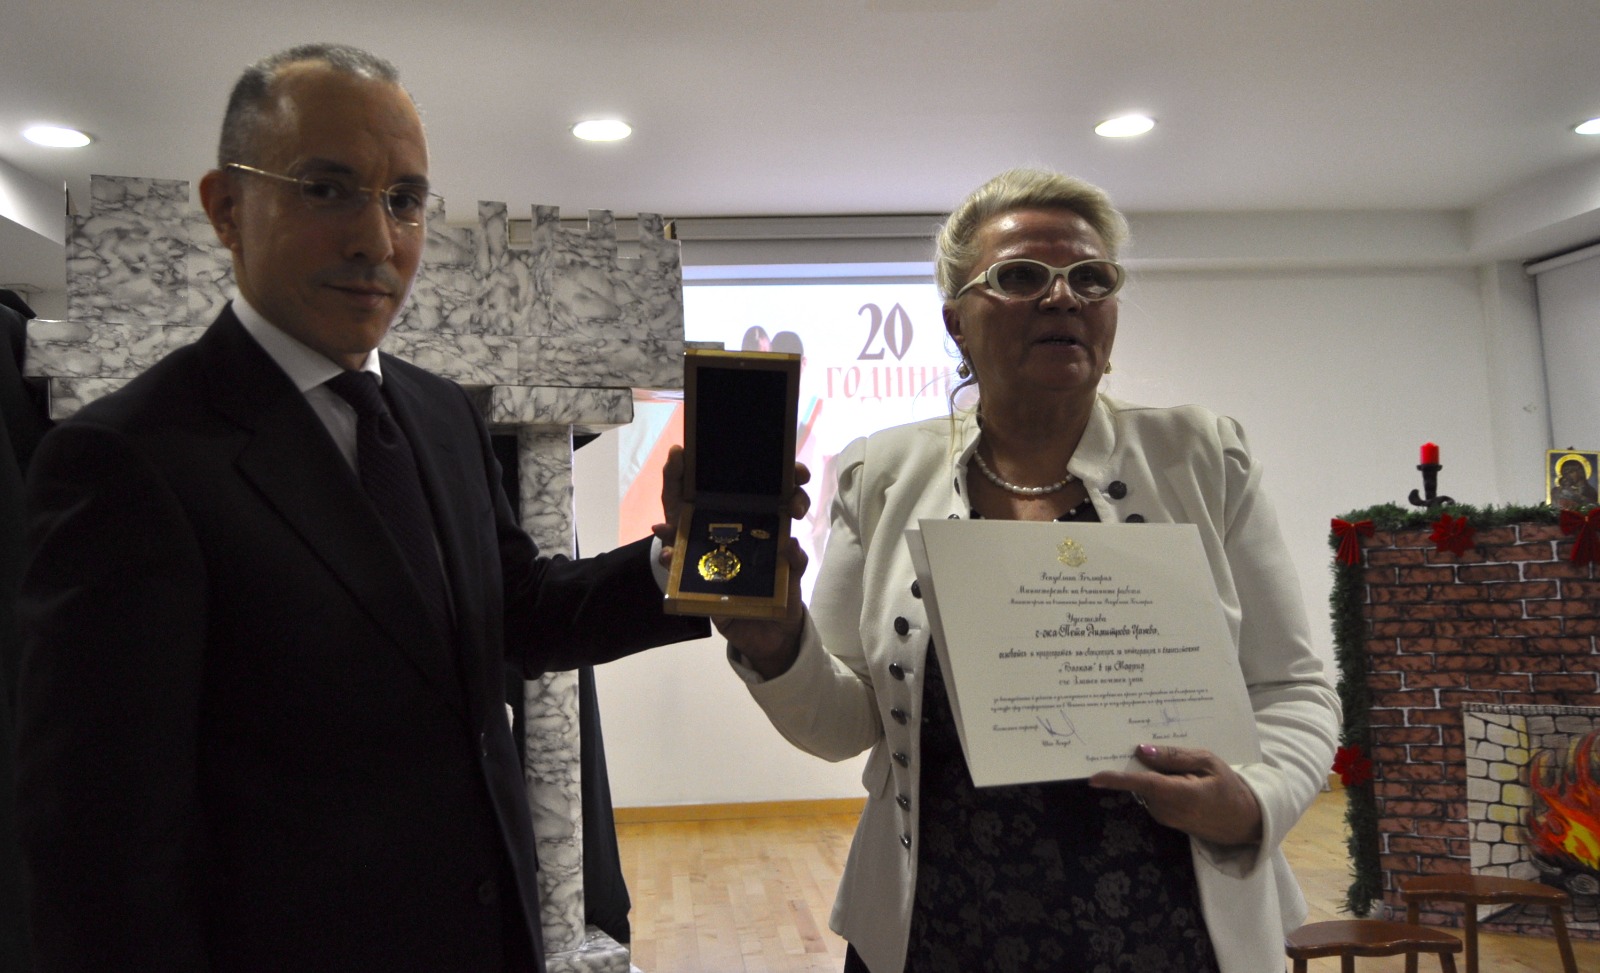 С коледно тържество Първо българско неделно училище „Св. Иван Рилски“ отбеляза своята 20-та годишнина